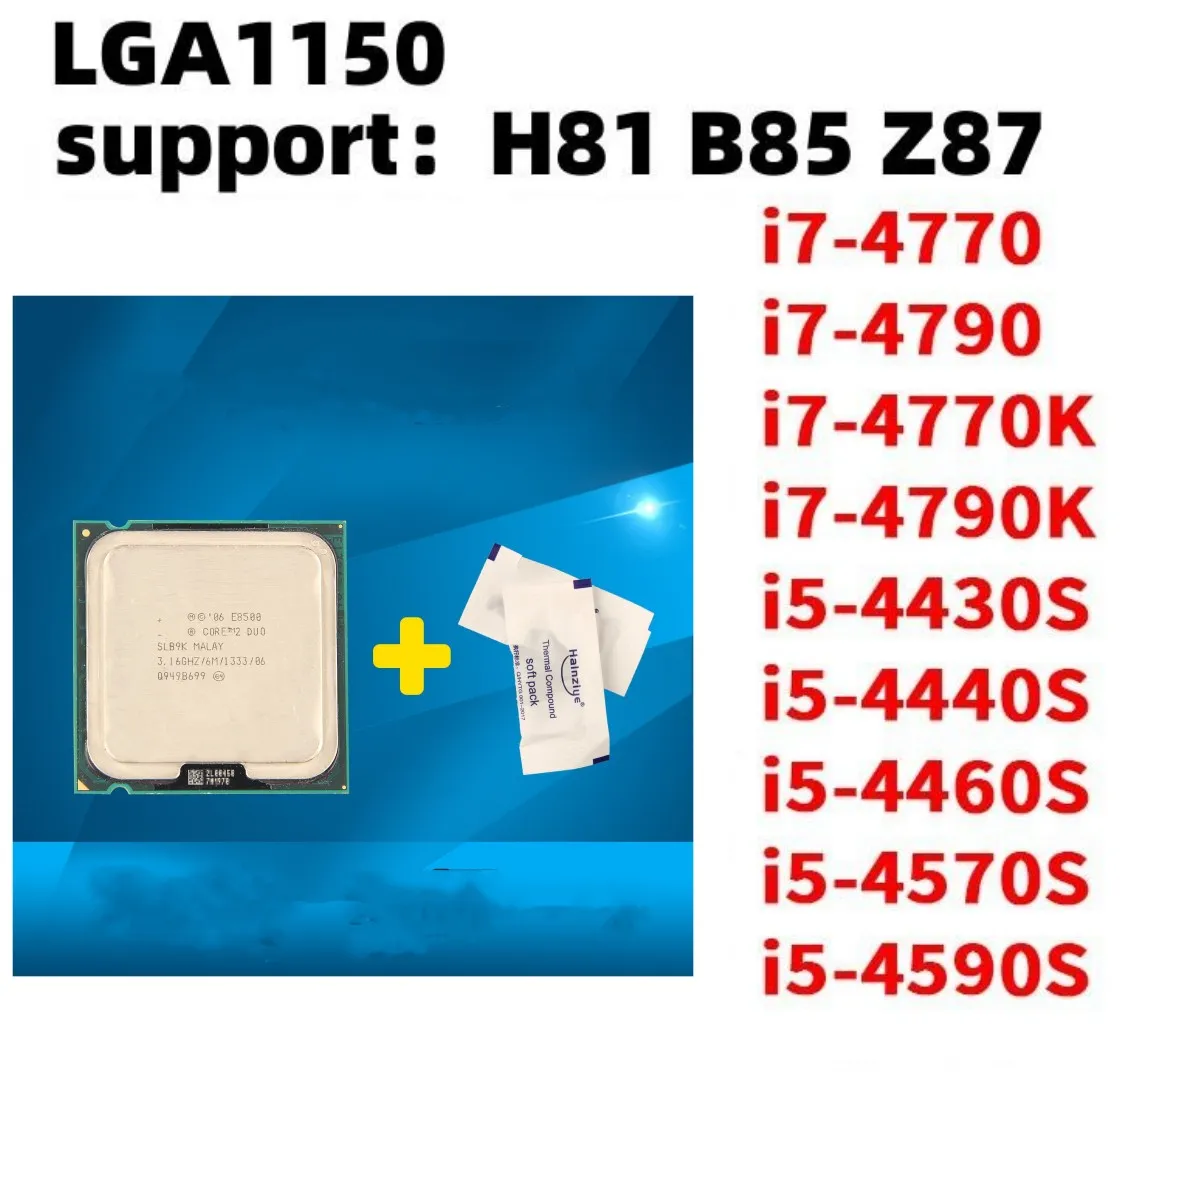 i7-4770 I7-4790 I7-4770K I7-4790K I5-4430S I5-4440S I5-4460S I5-4570S I5-4590S Компьютерный процессор.